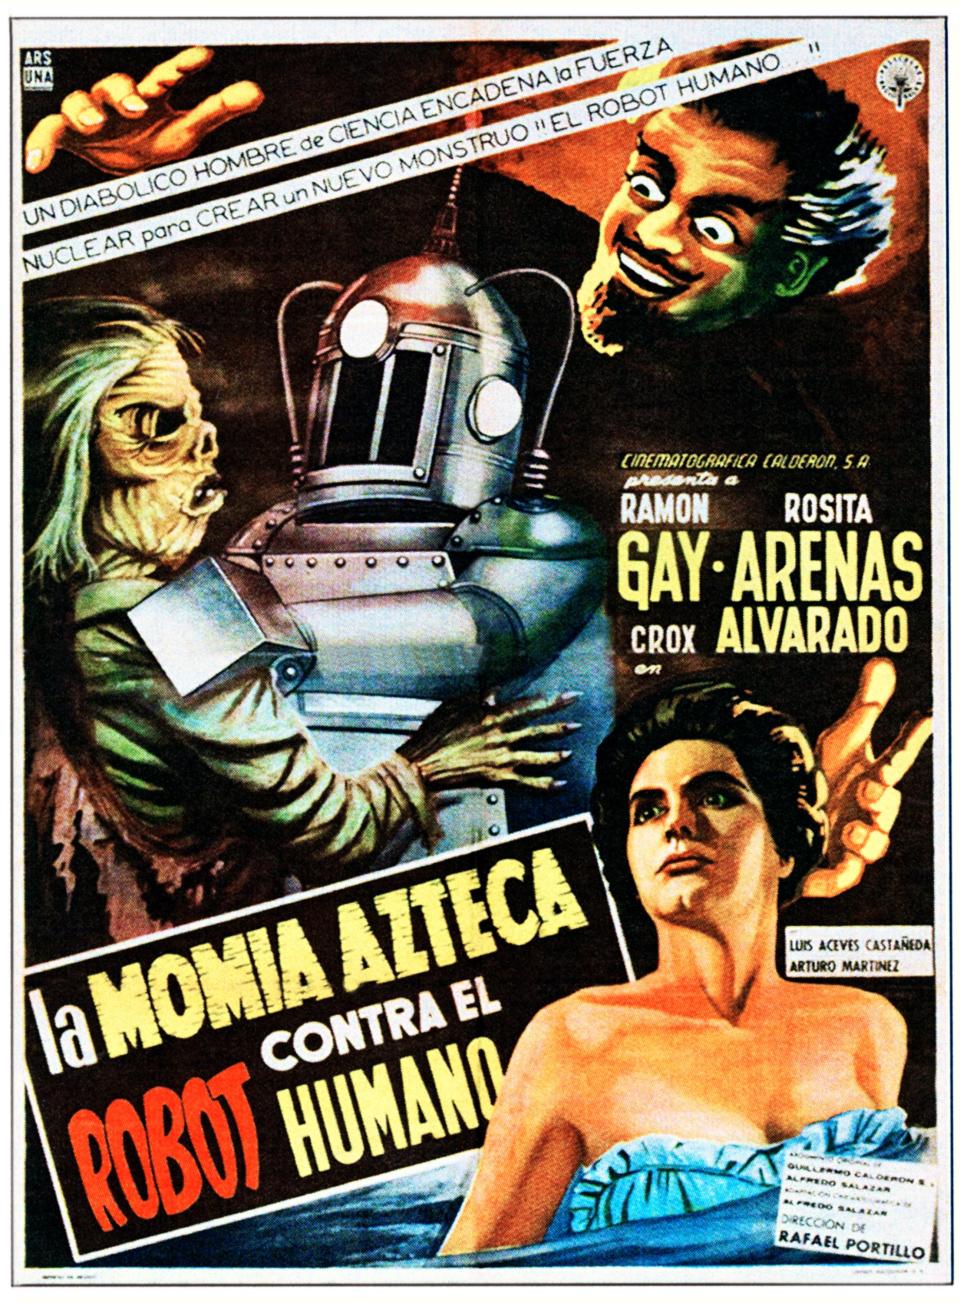 Poster de 'LA MOMIA AZTECA CONTRA EL ROBOT HUMANO'. (Photo by LMPC via Getty Images)